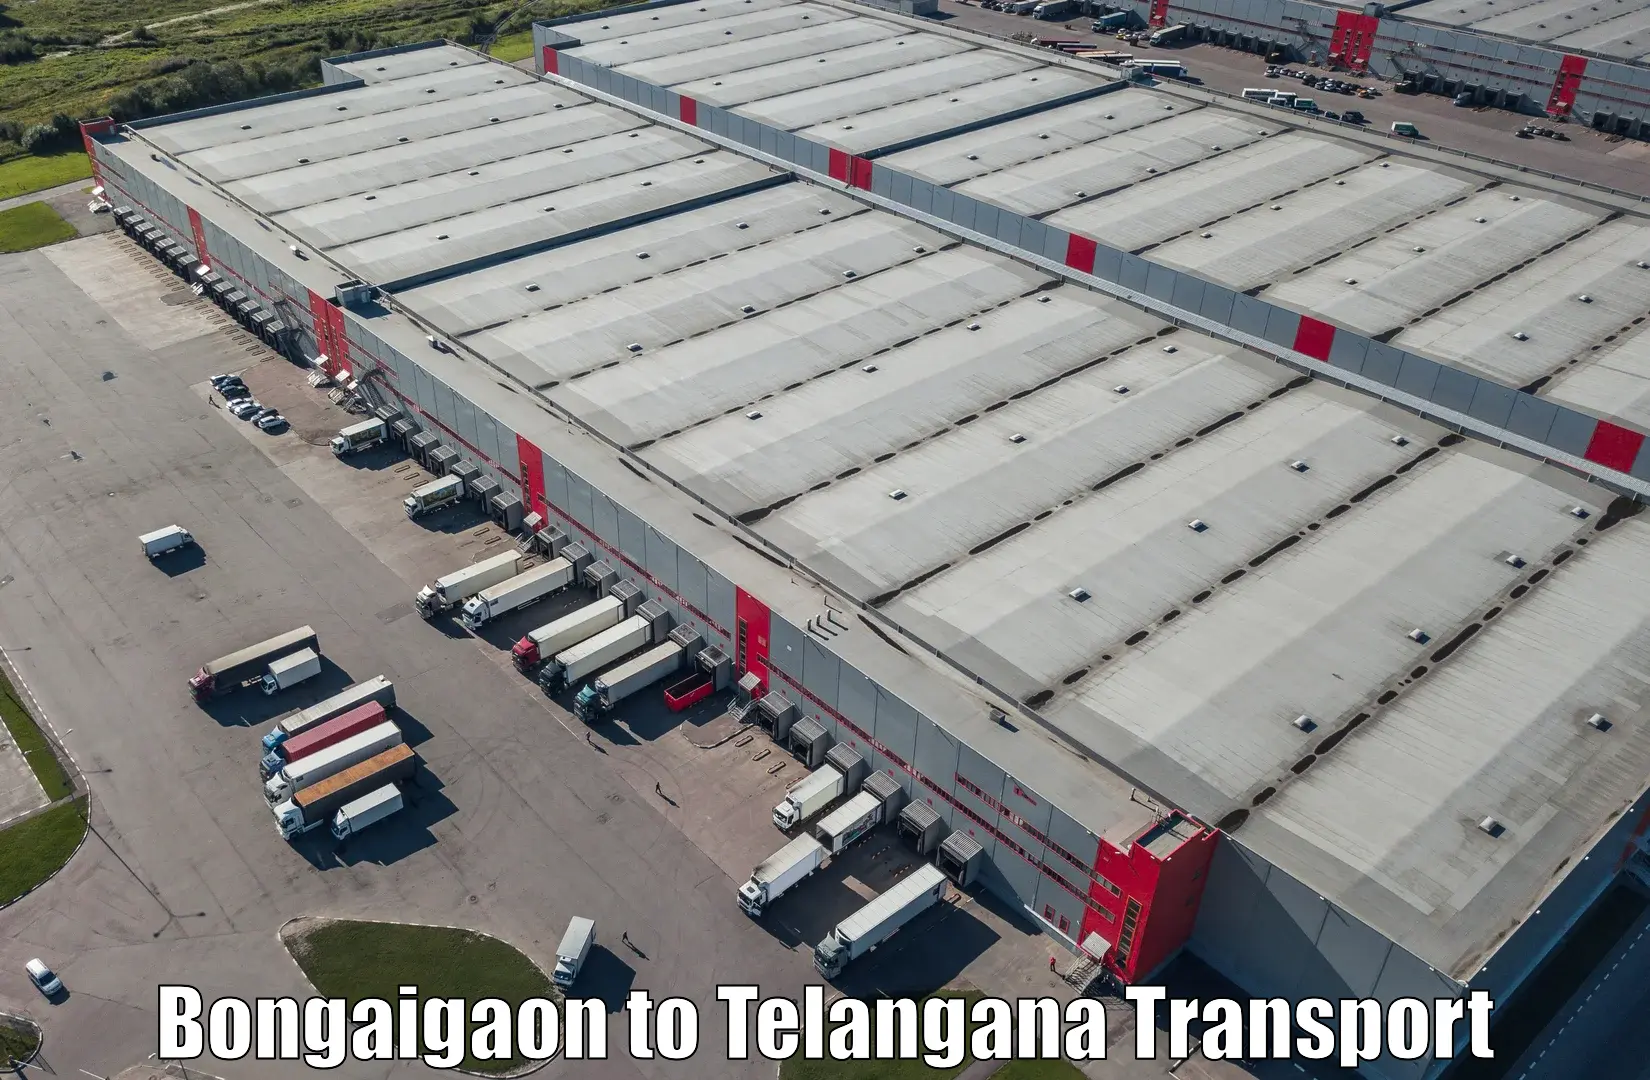 Transport in sharing Bongaigaon to Gangadhara